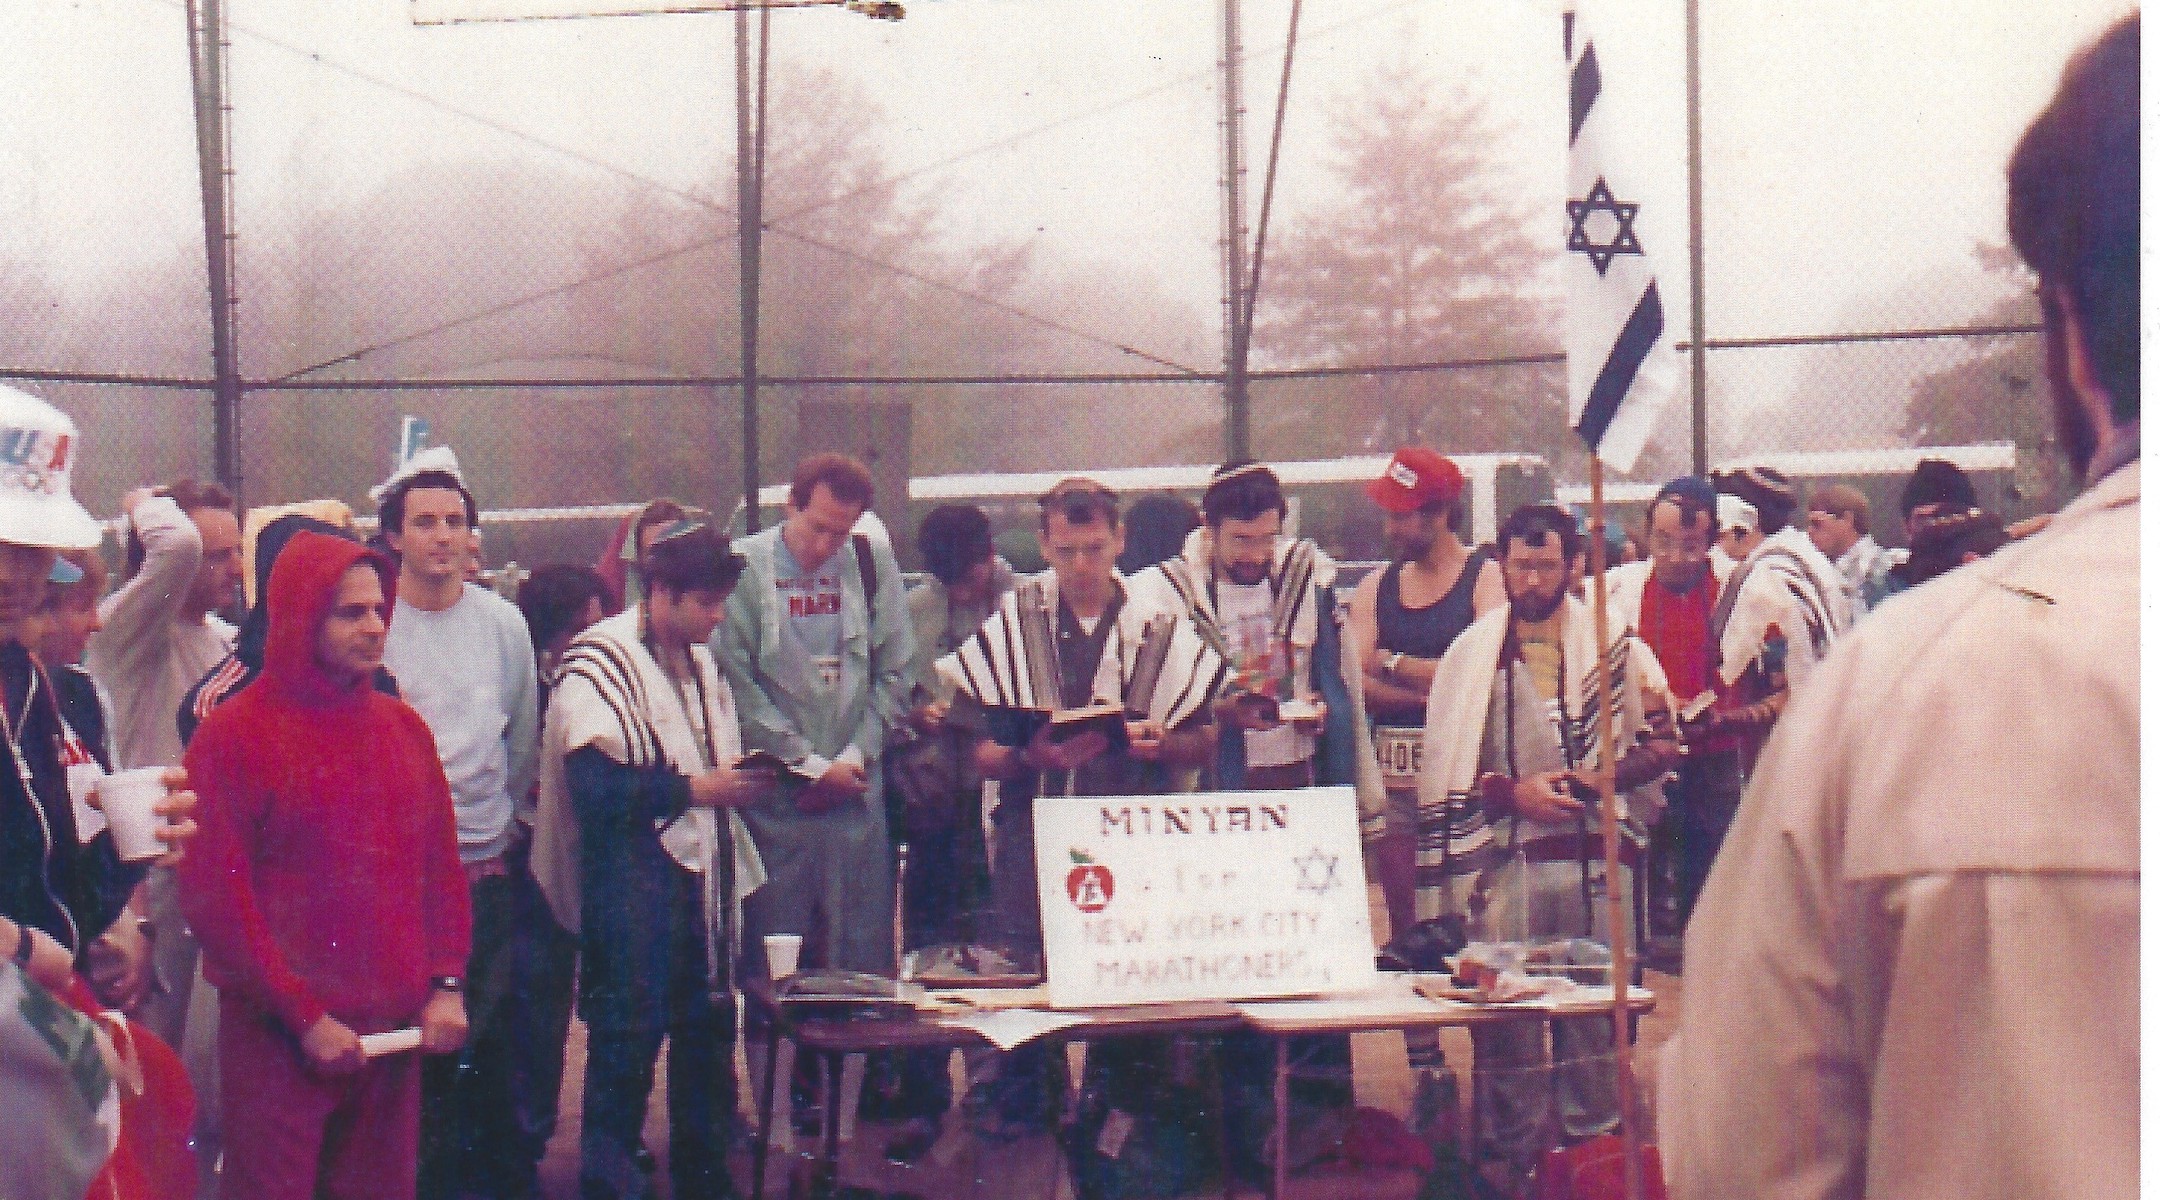 Minyangoers in 1984